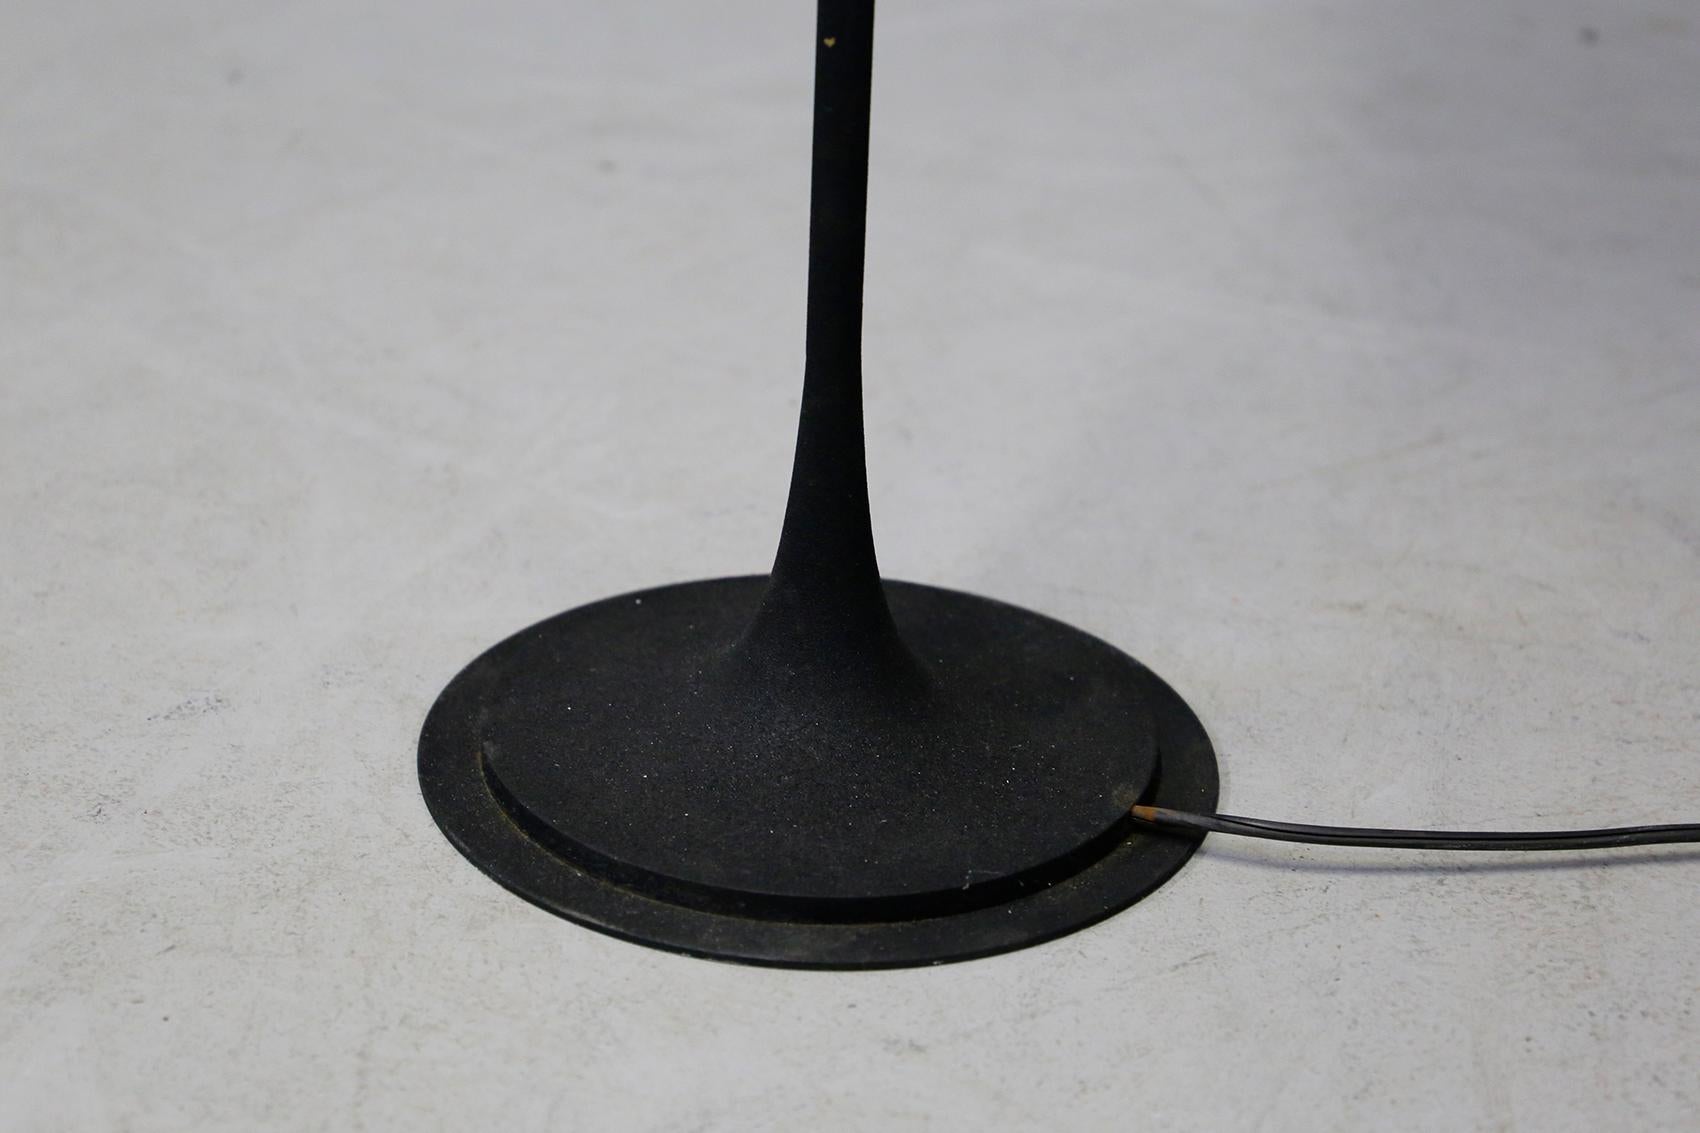 Mid-20th Century Gino Sarfatti Floor Lamp Midcentury for Arteluce in Black Model 1082, 1950s